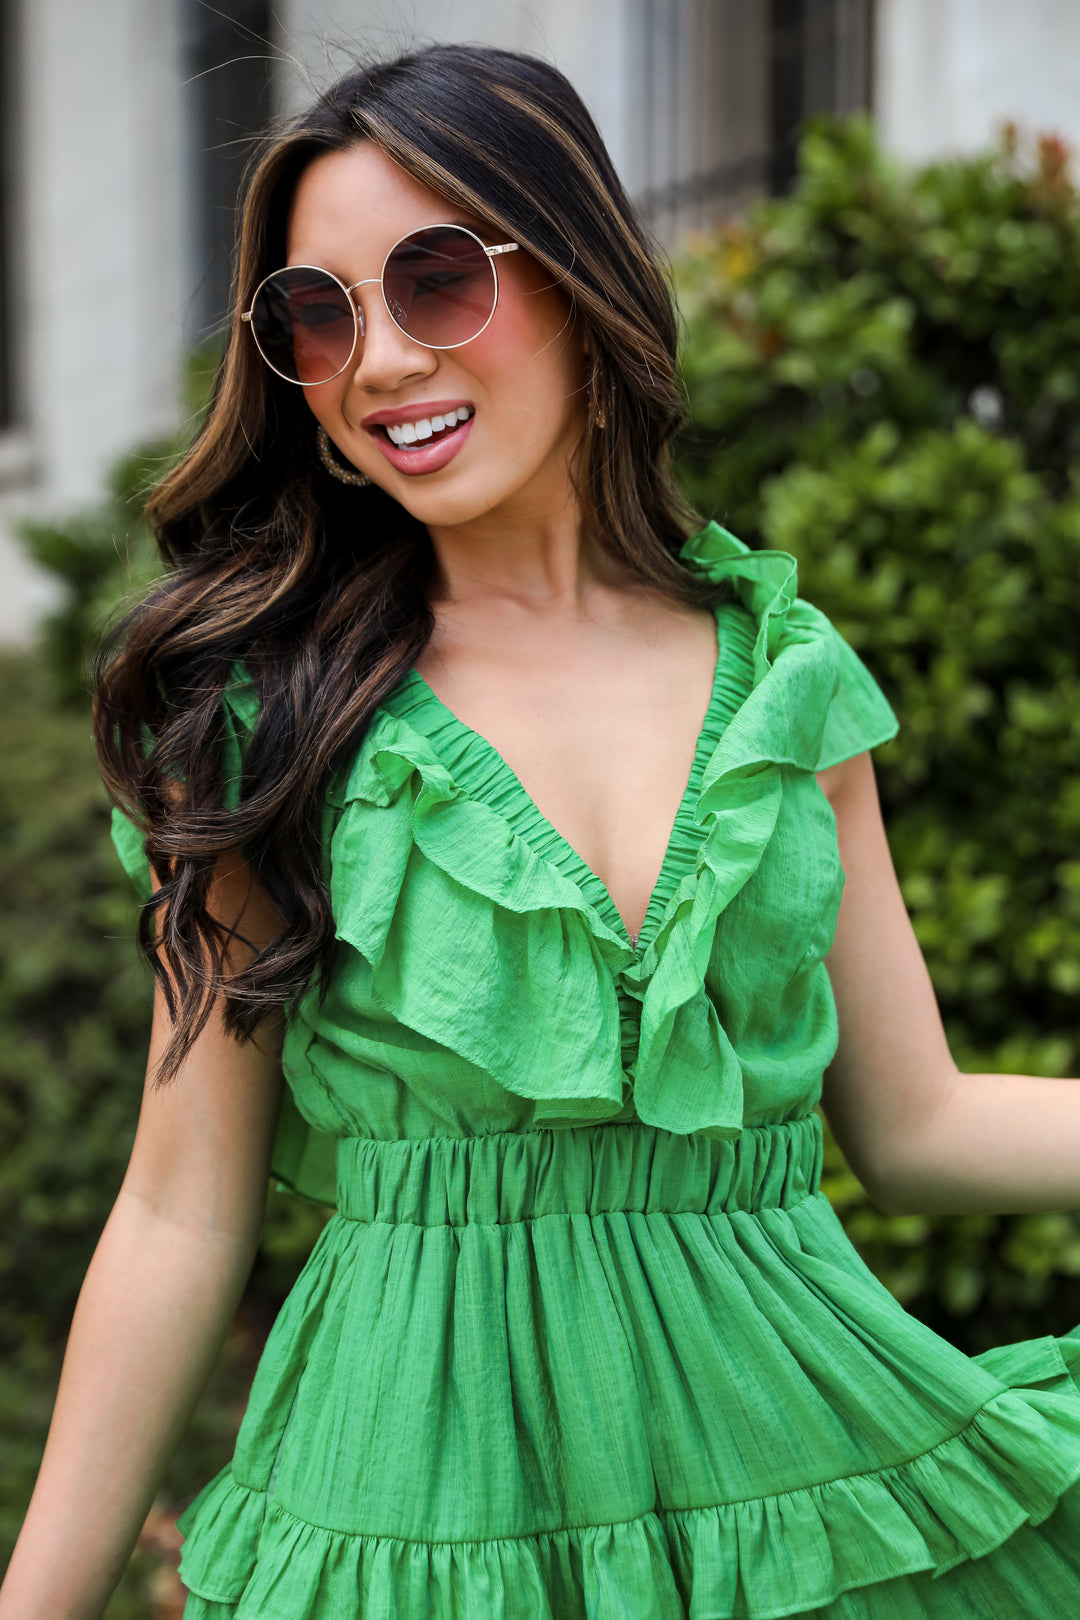 Marvelous Time Green Ruffle Mini Dress